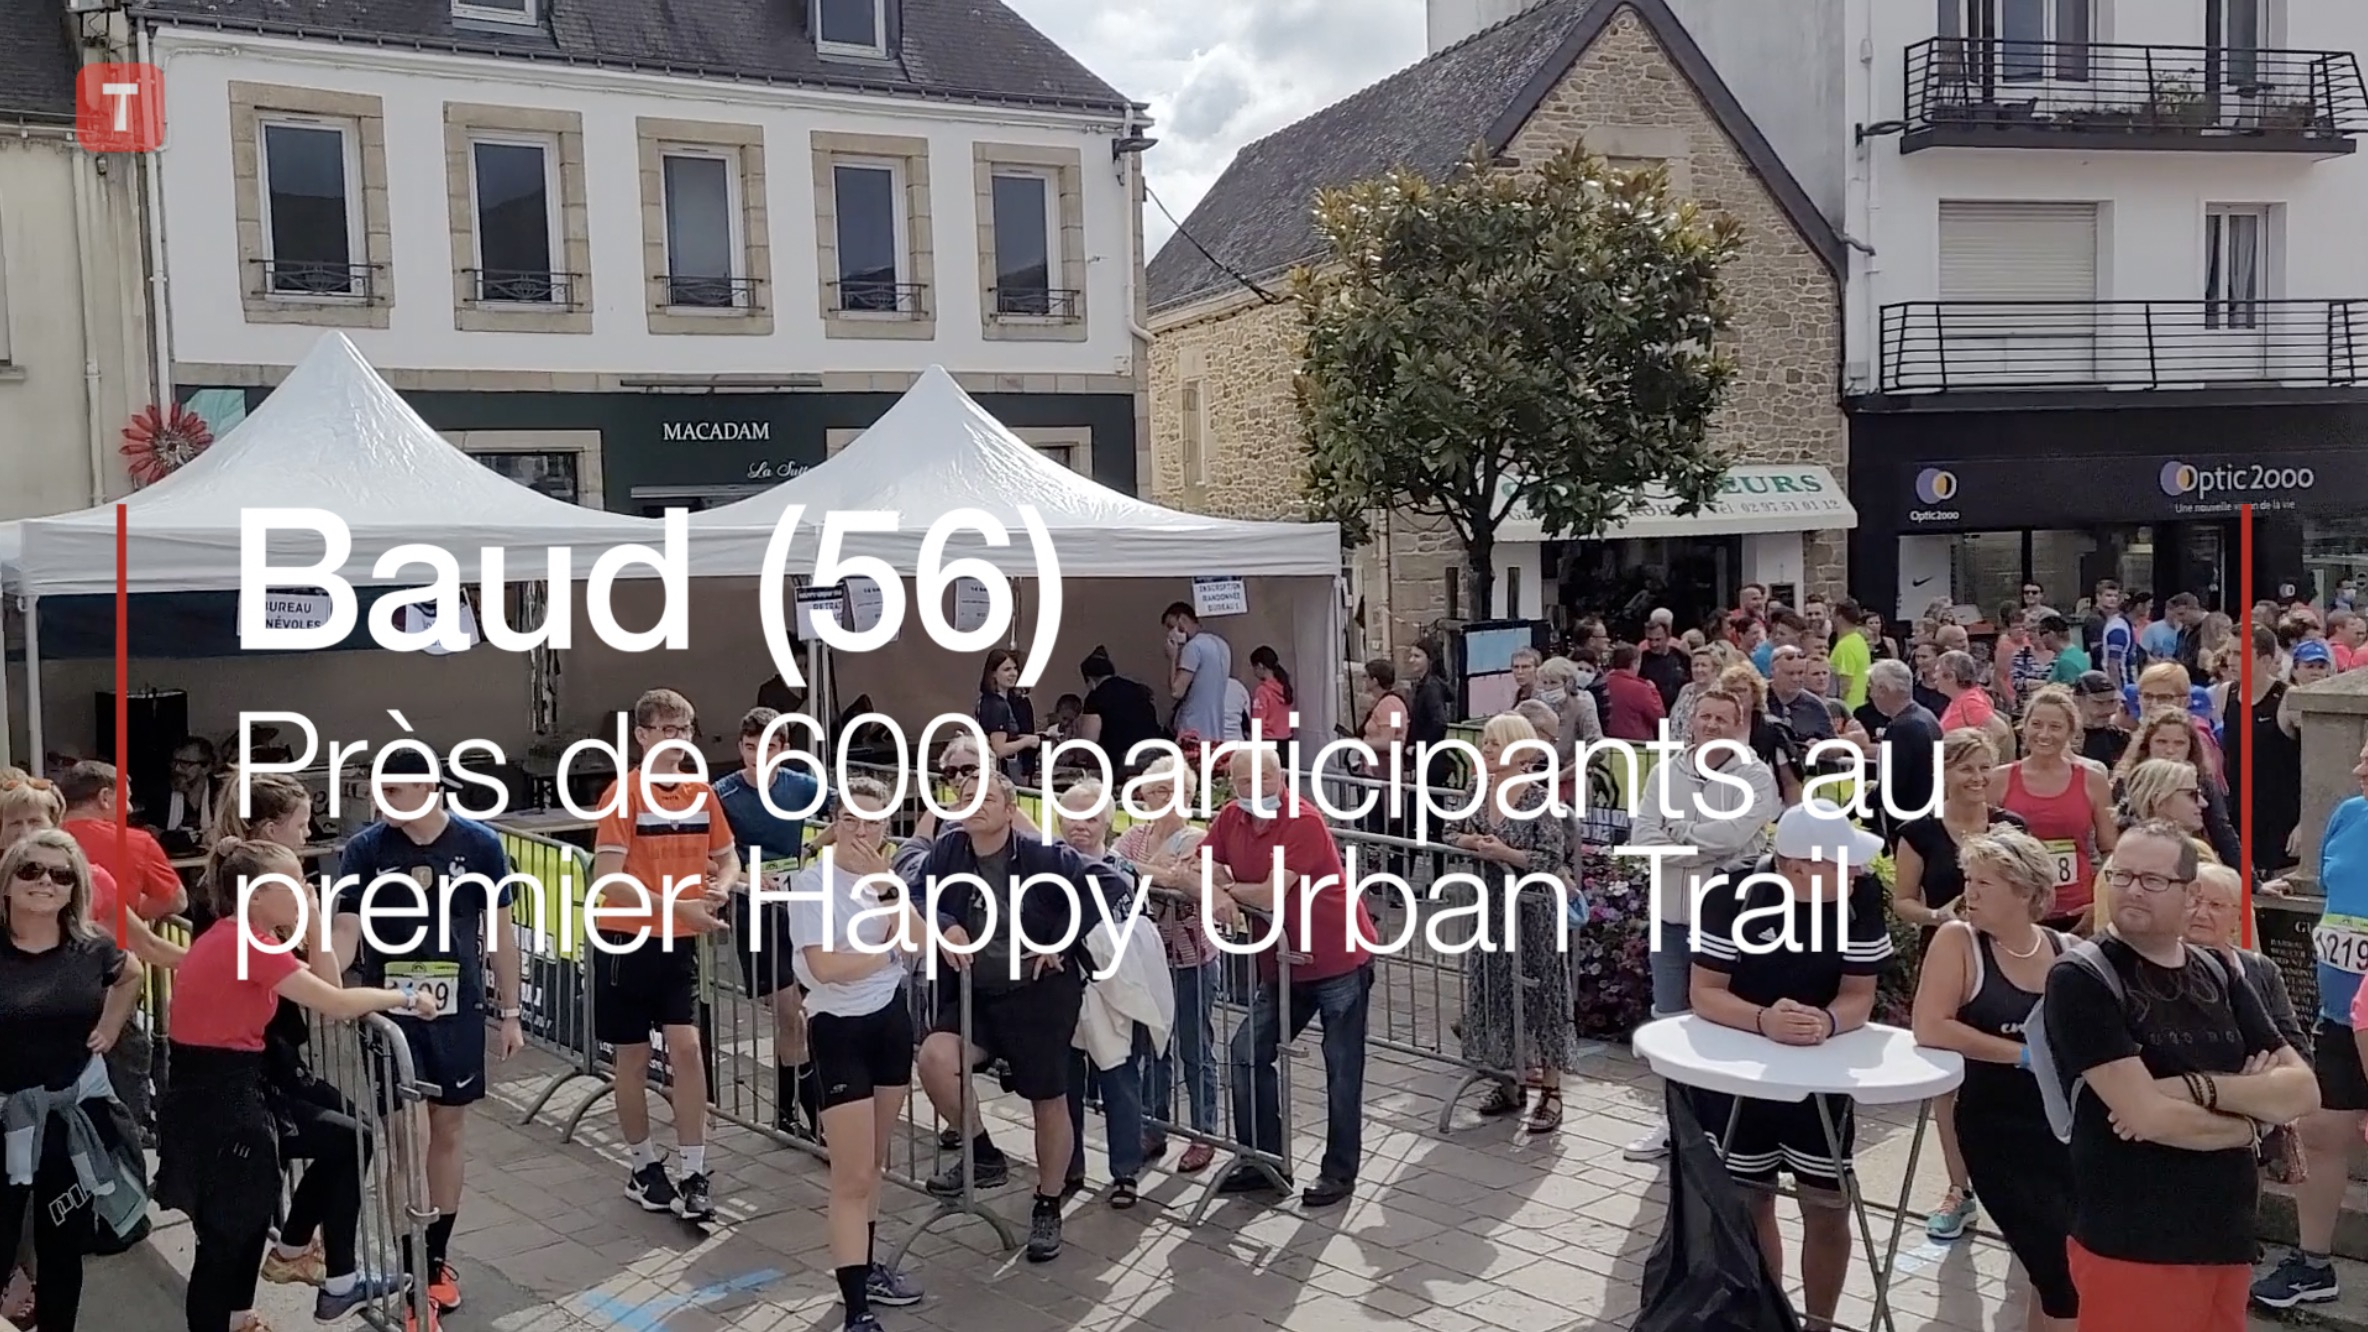 Baud (56). Près de 600 participants au premier Happy Urban Trail  (Le Télégramme)